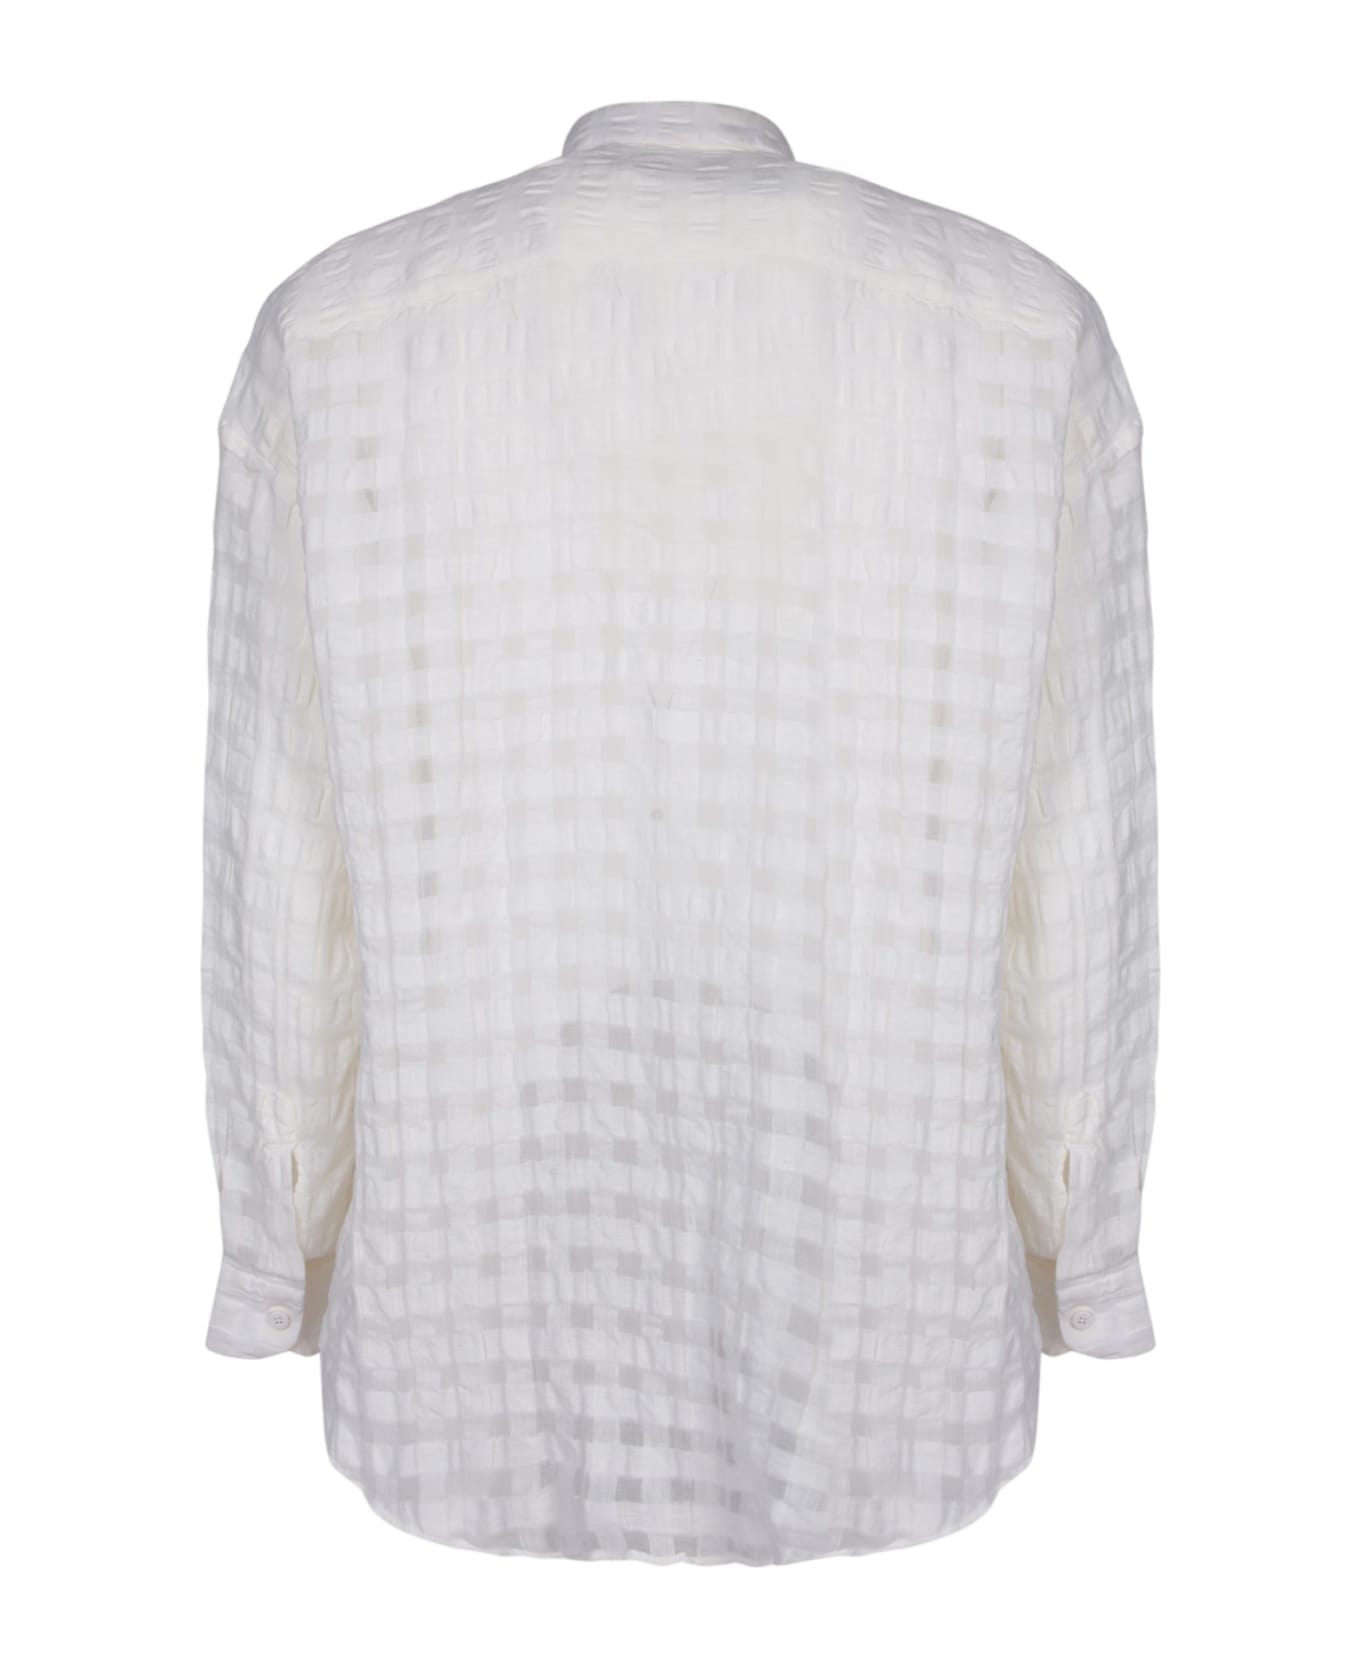 costumein Valentino White Cotton Shirt - White シャツ